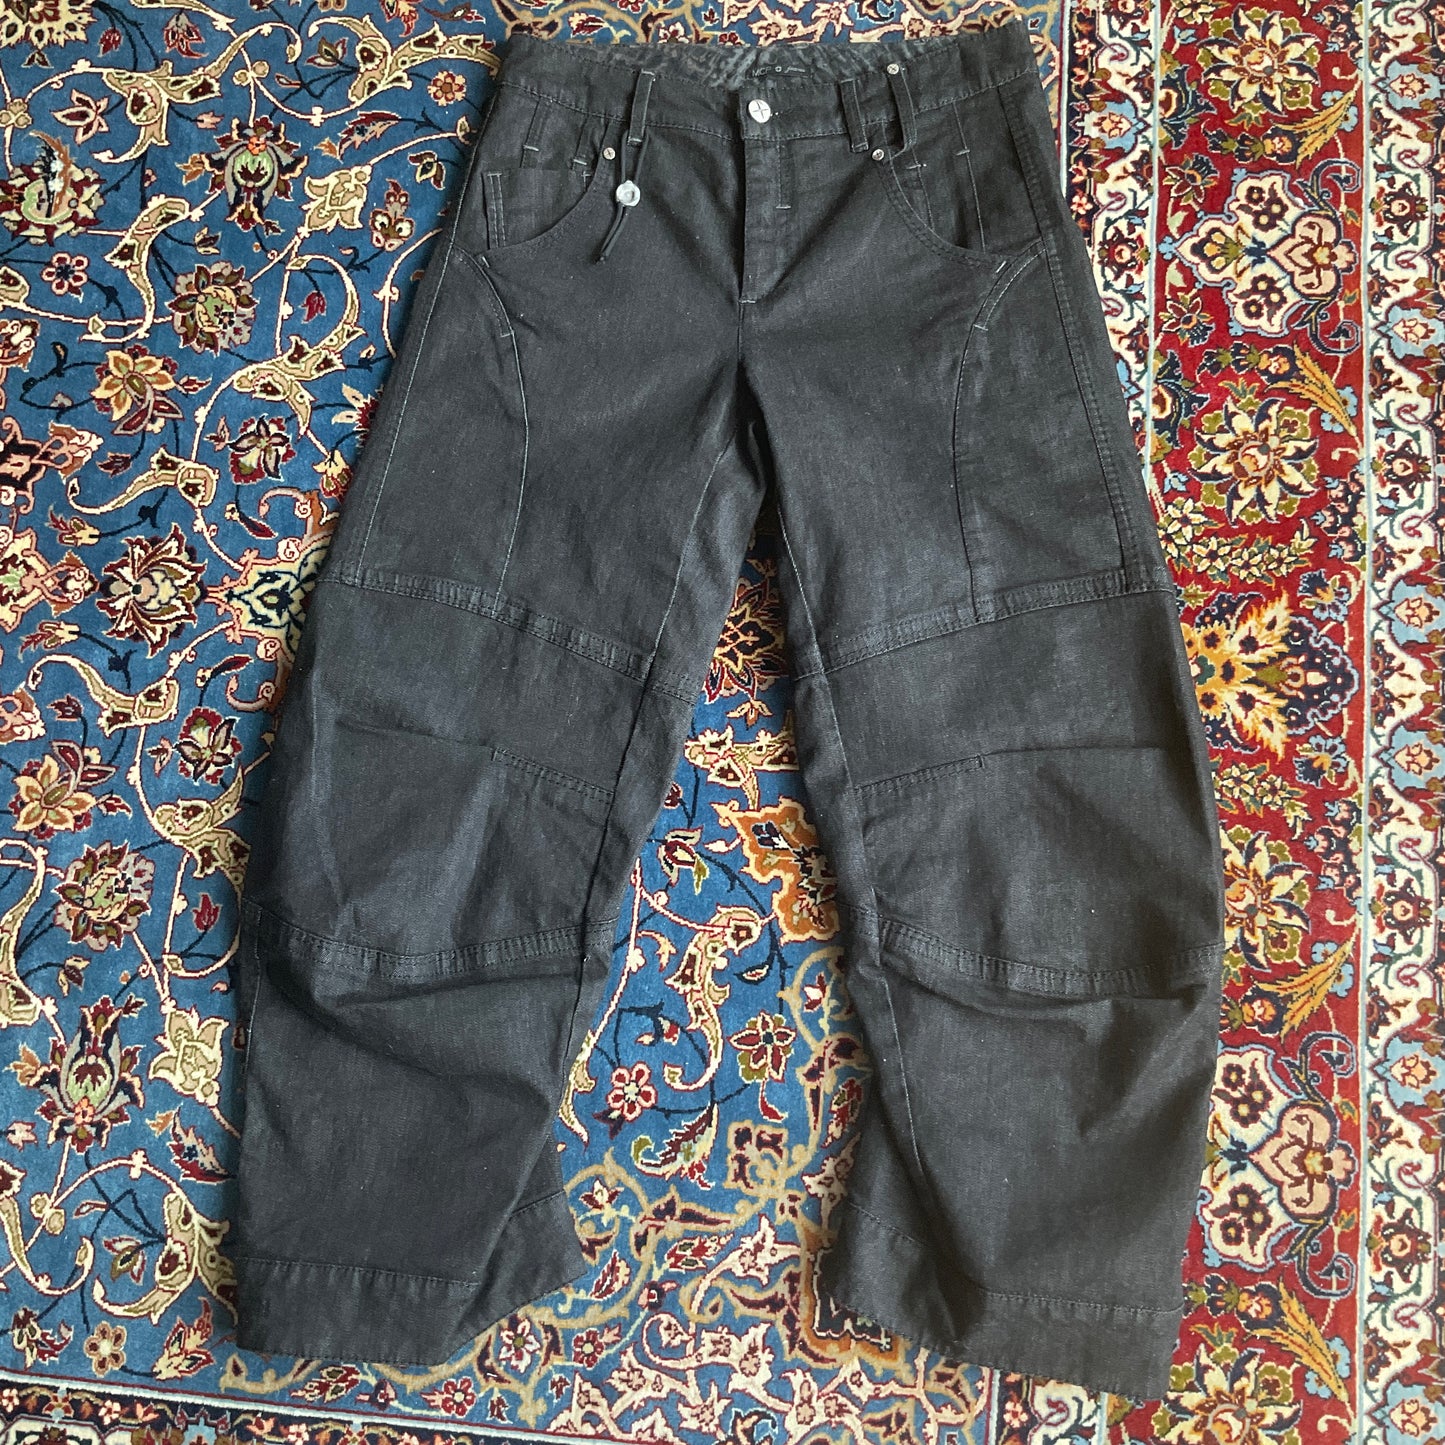 Deconstructed capri pants